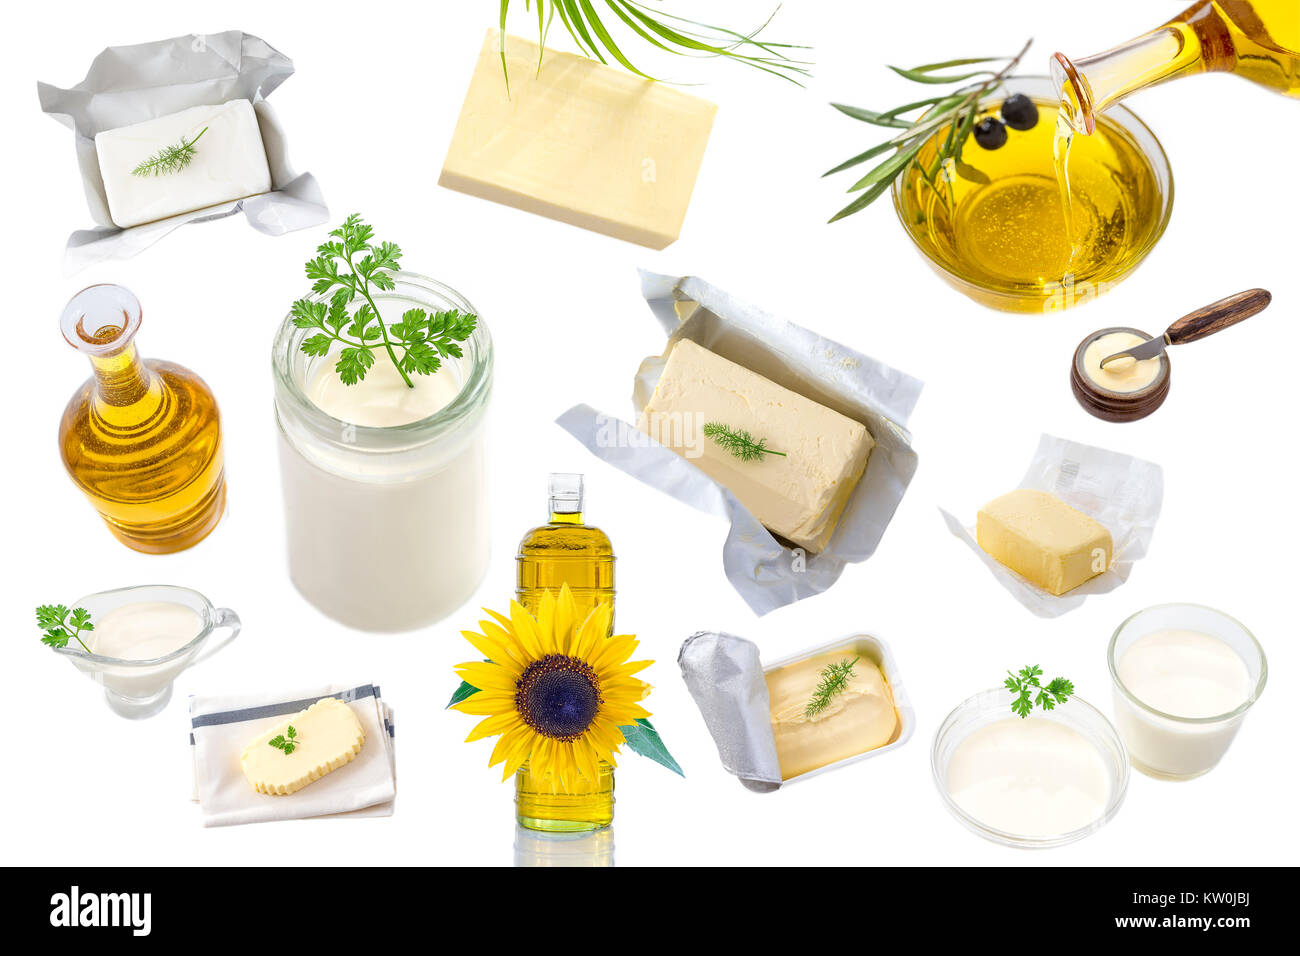 Grassi alimentari e olio : insieme di prodotti lattiero-caseari e olio e grassi animali su sfondo bianco Foto Stock